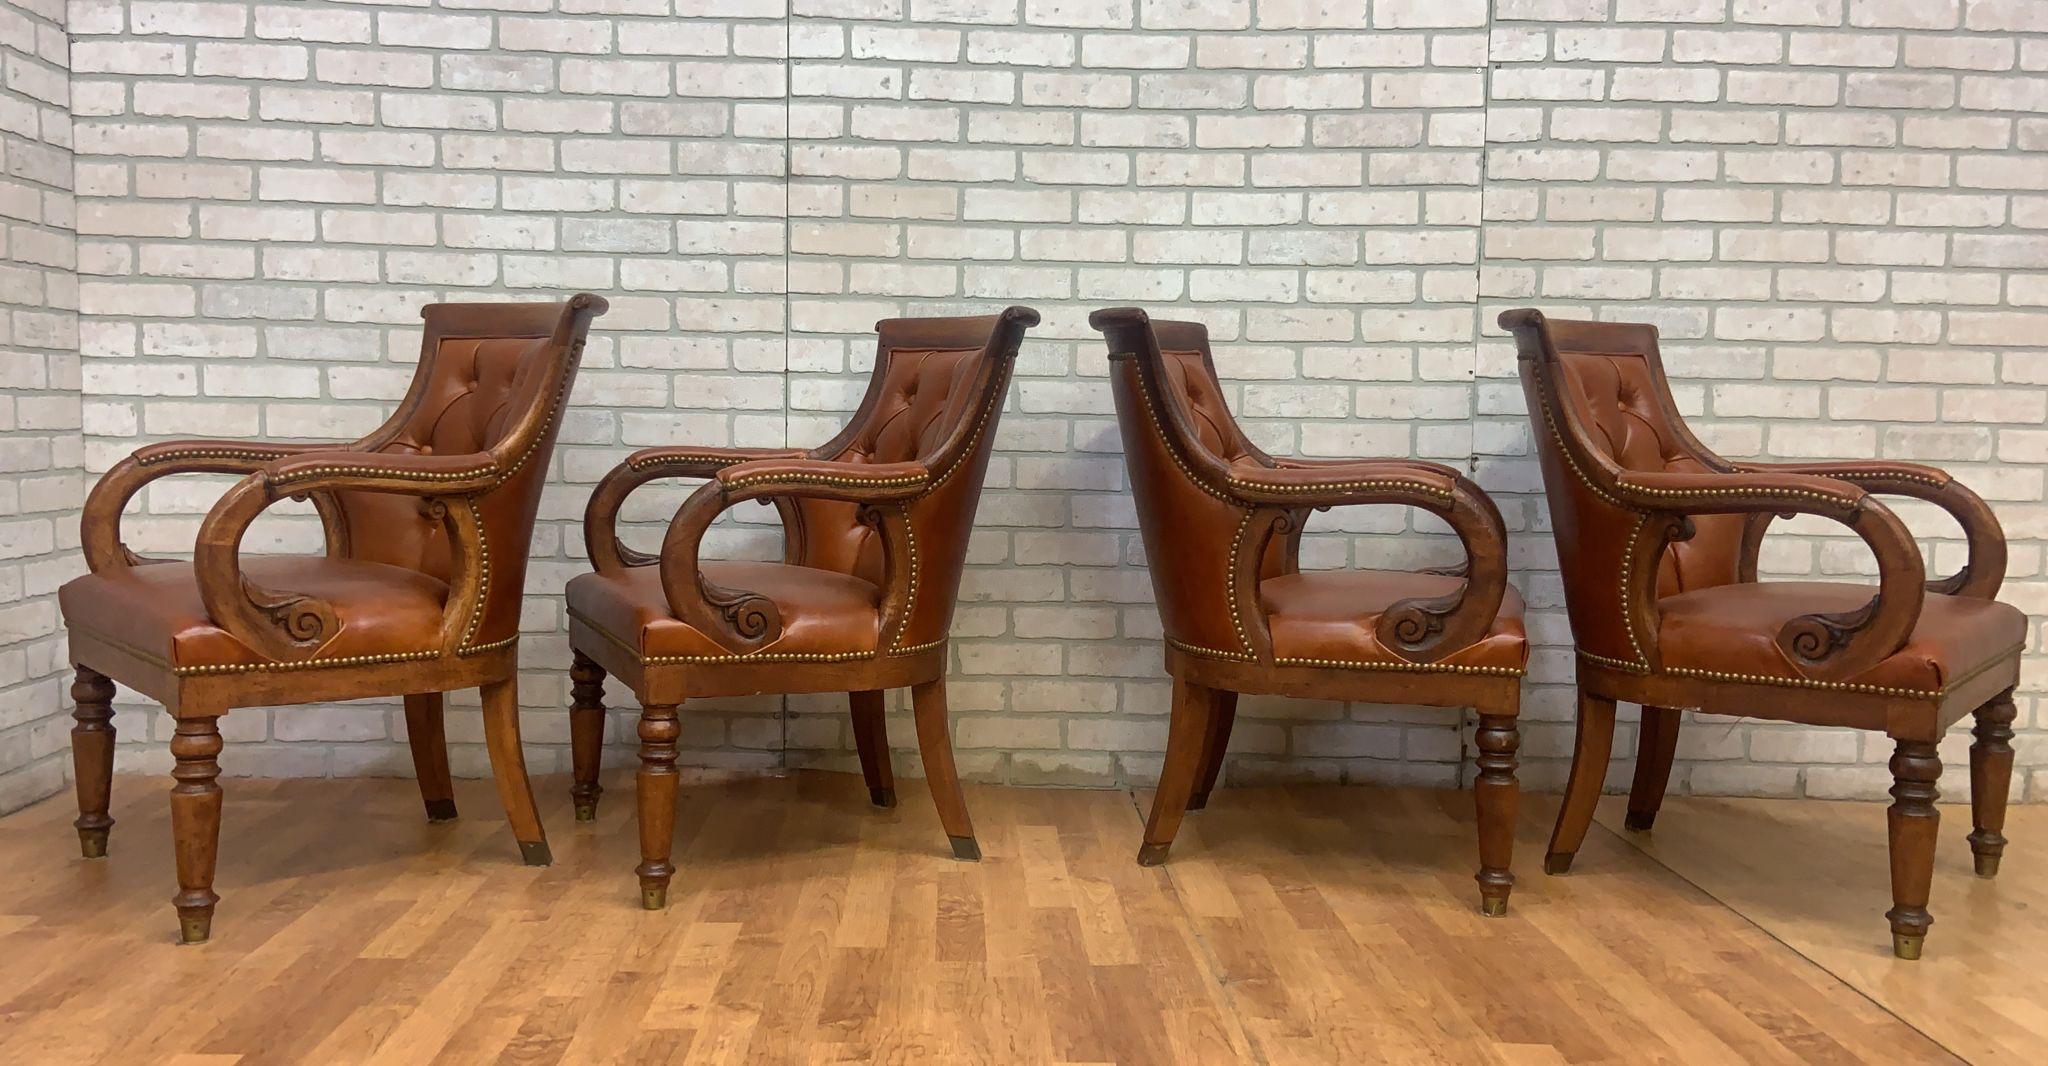 Vintage Hancocks and Moore Tufted Jockey Club Chair Newly Upholstered in Leather - Set of 4

Magnifique ensemble de chaises Jockey vintage de Hancocks &New avec des accoudoirs à volutes complexes, des pieds tournés, des dossiers arqués et une